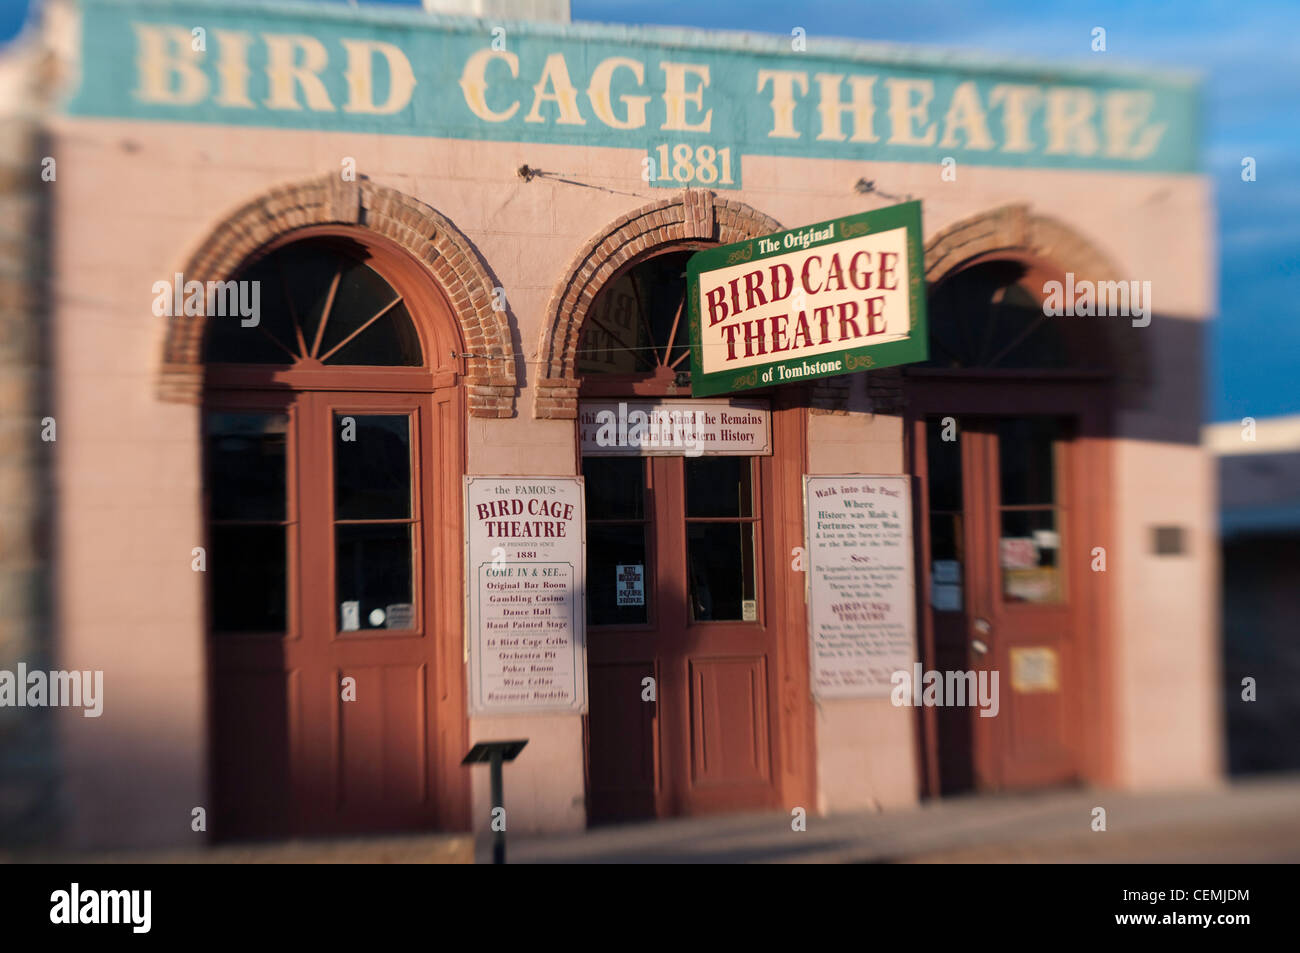 Dawn breaks on the historic Birdcage Theatre on Allen Street, Tombstone, Arizona Stock Photo